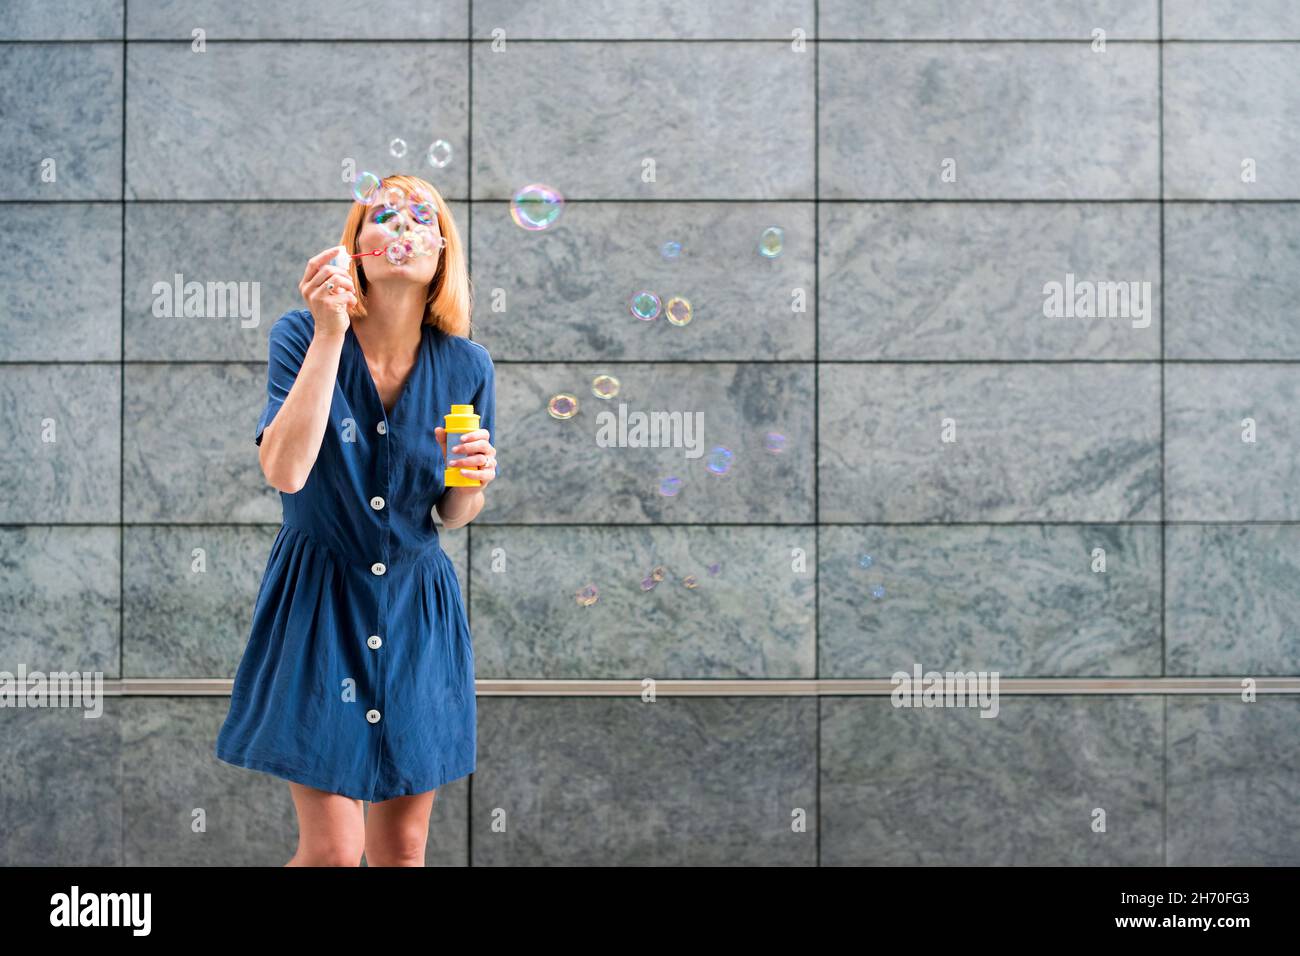 Spensierate la giovane donna in abito blu soffia le bolle di sapone arcobaleno mentre si diverte in estate su sfondo grigio parete Foto Stock